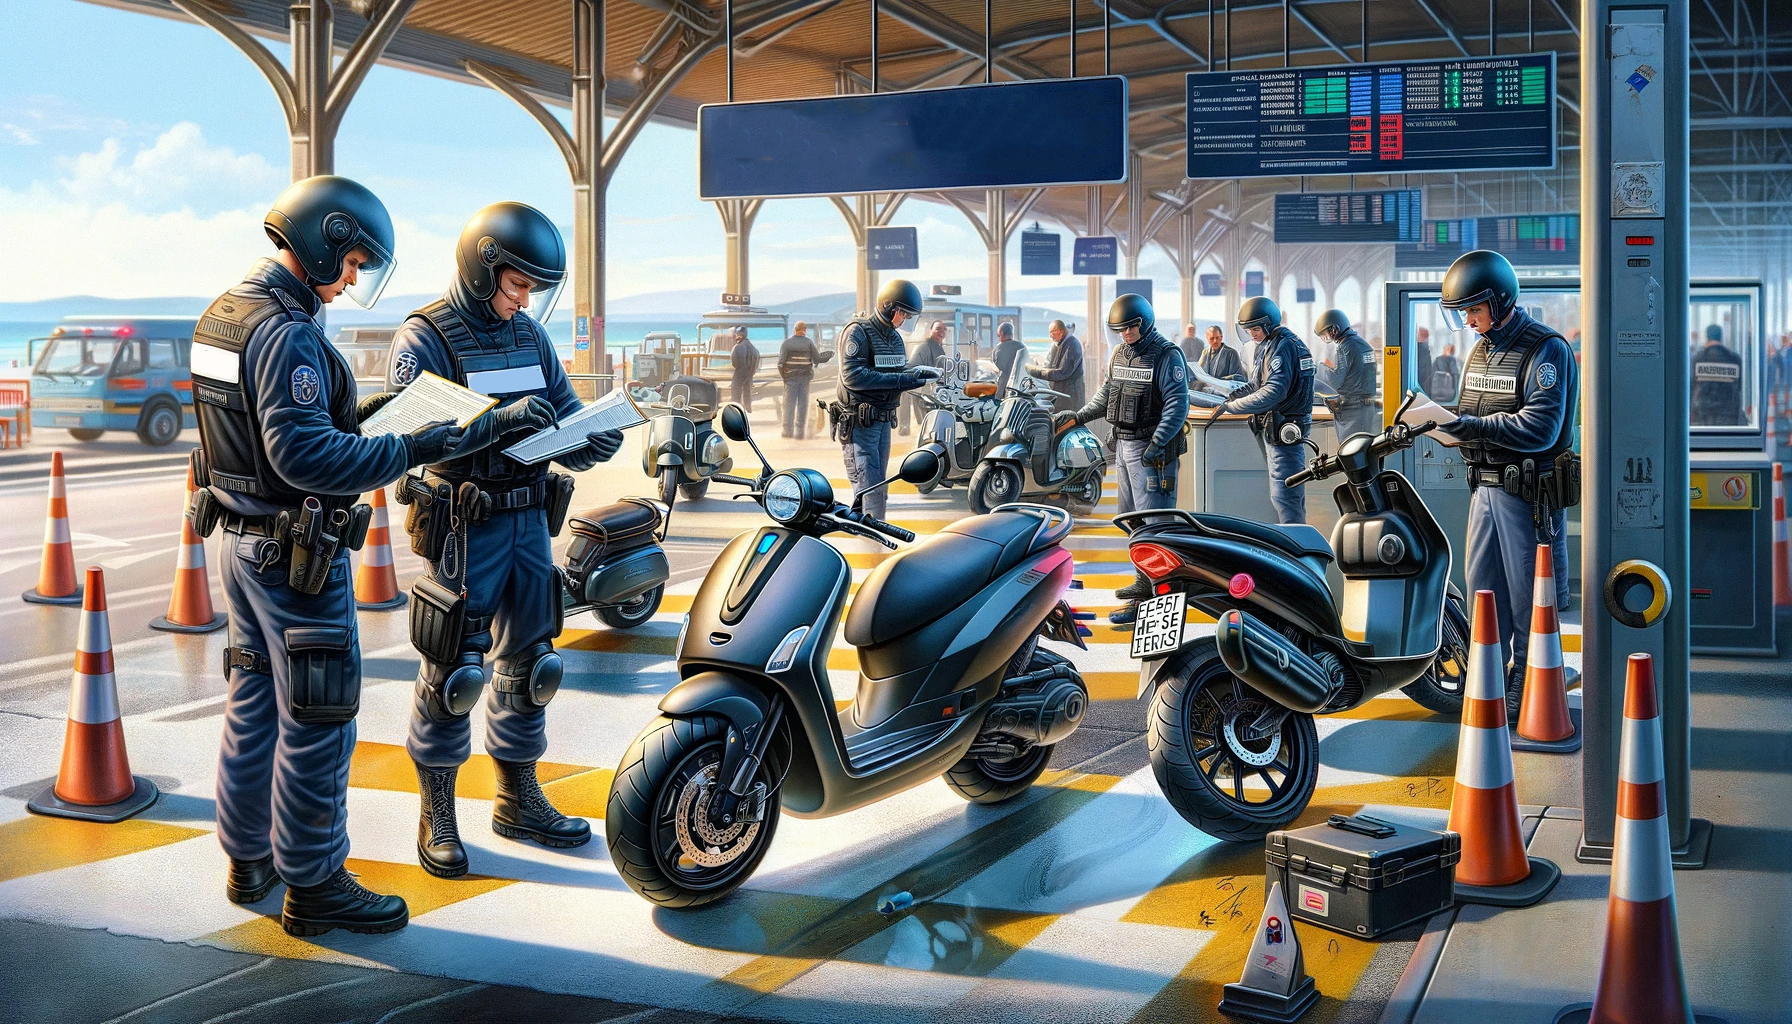 Policiers appliquant la réglementation dans un parking avec des motos.